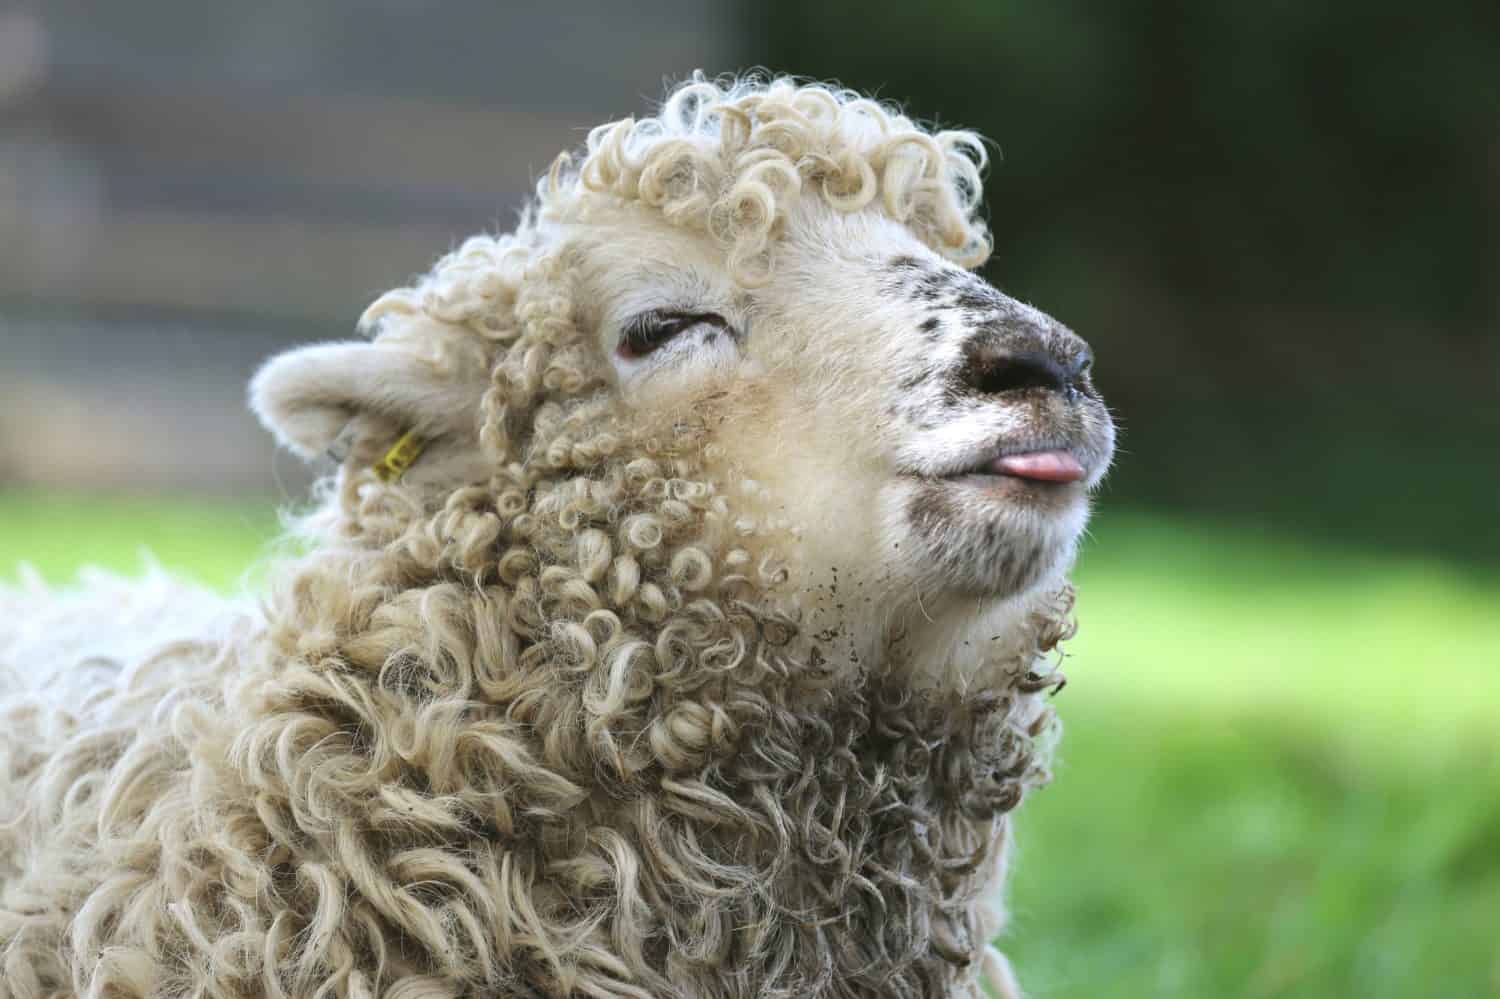 Foto divertente dell'agnello Greyface Dartmoor con la lingua fuori, una rara razza di pecore domestiche originaria di Dartmoor, nel sud-ovest dell'Inghilterra.